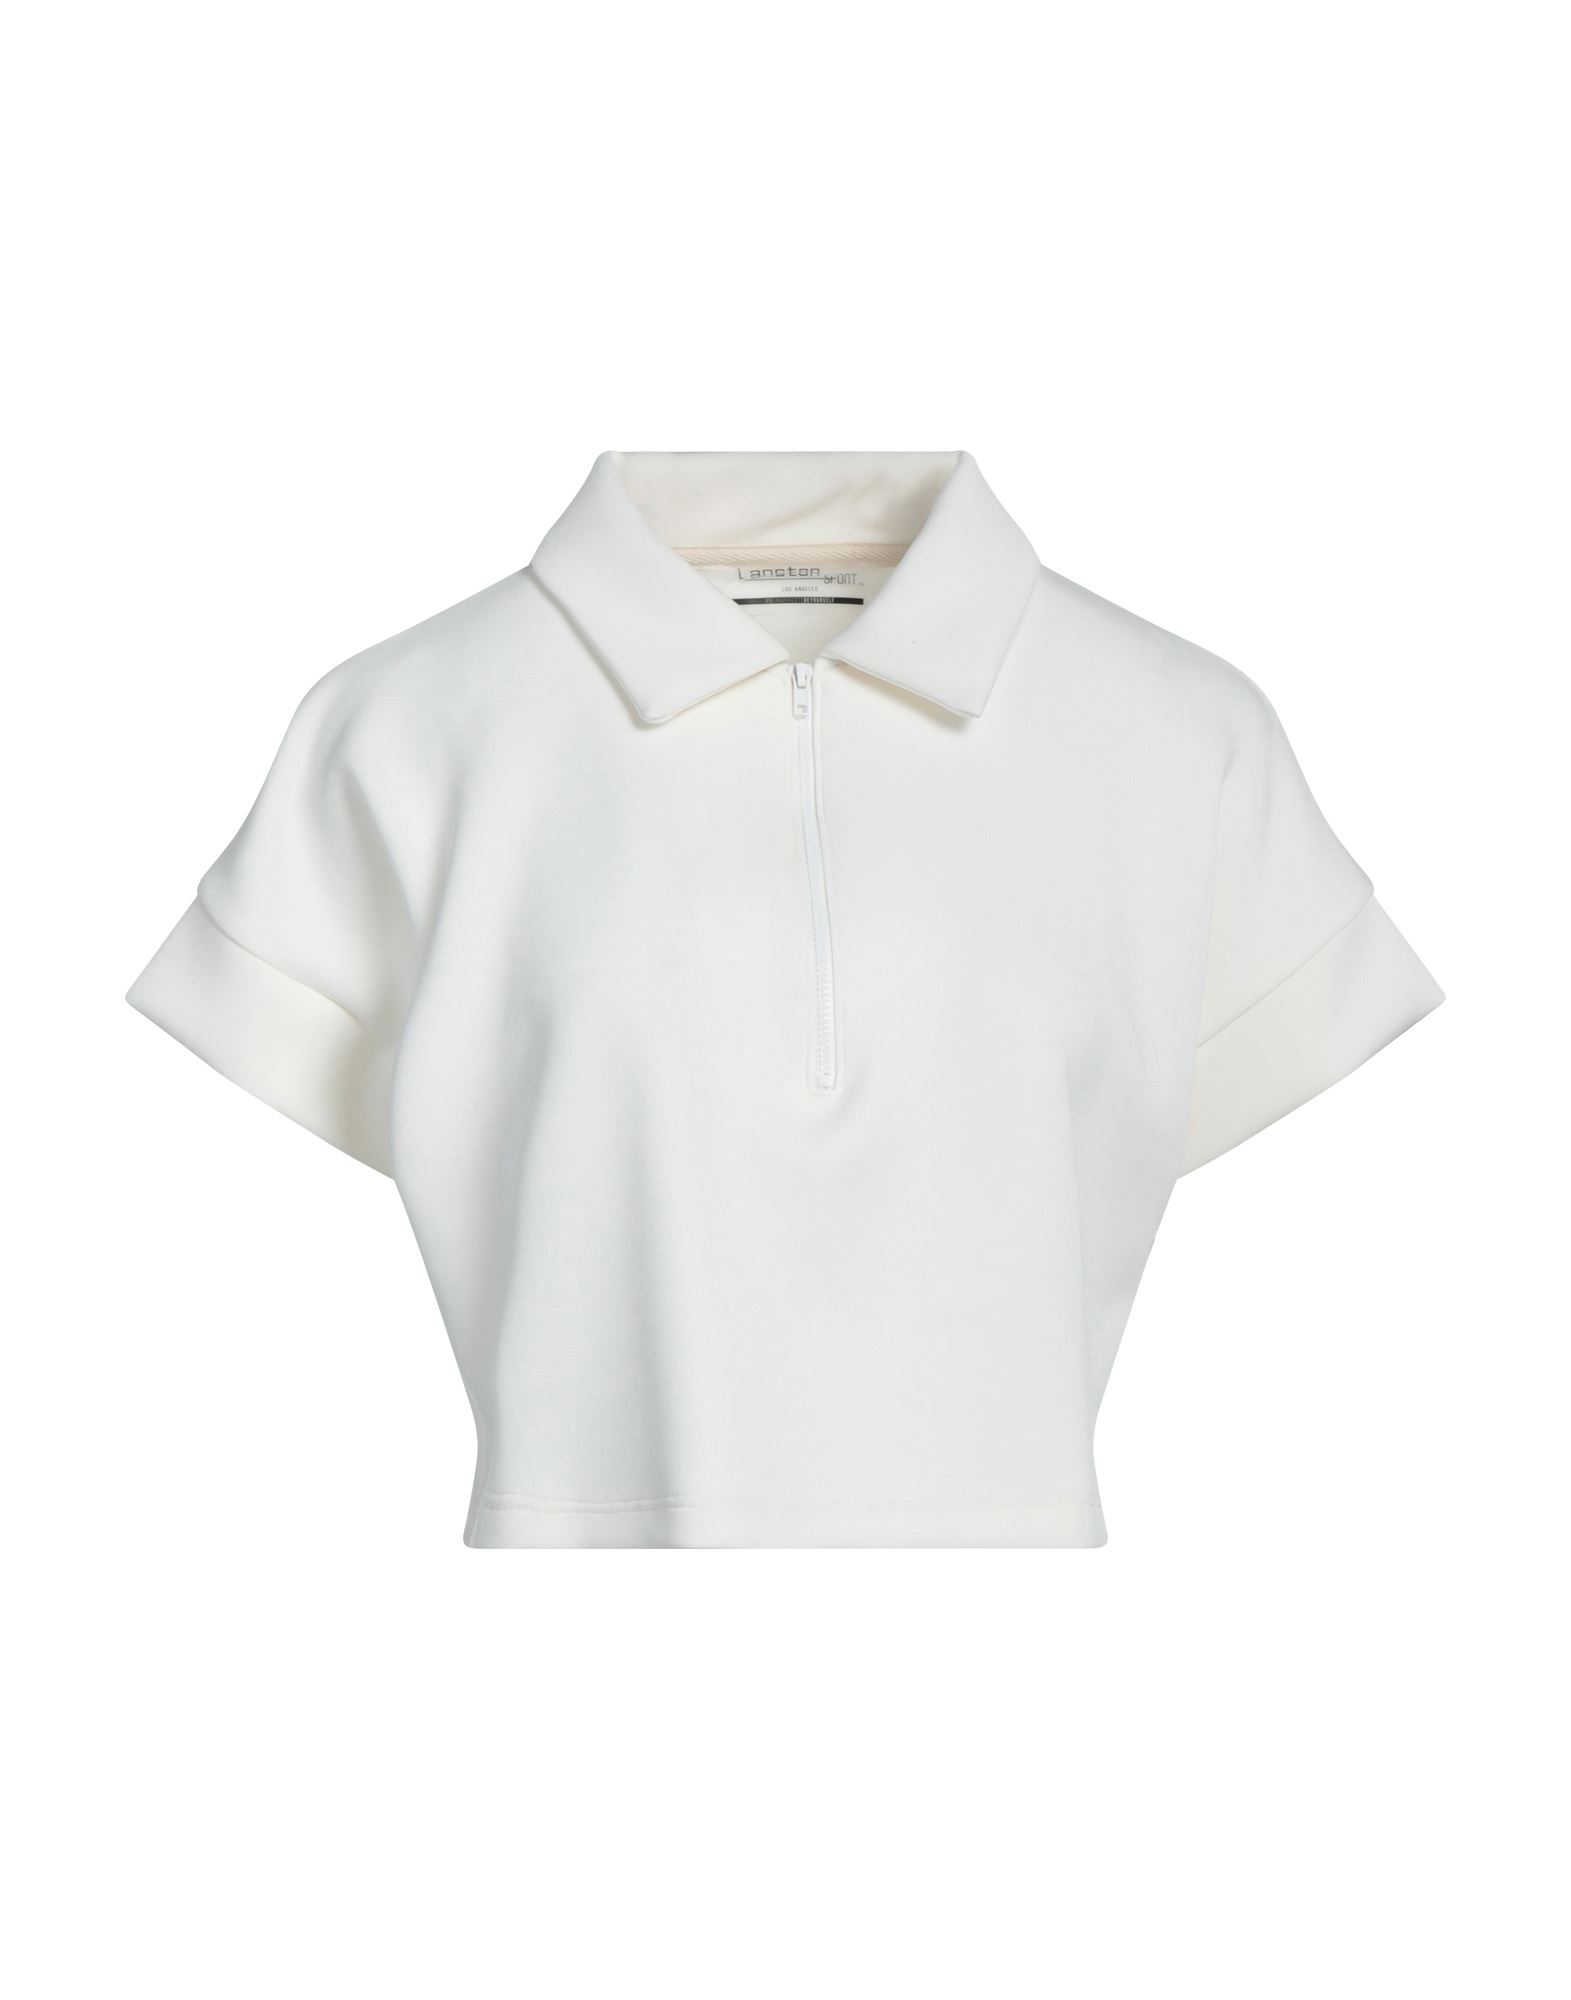 Lanston Sport Polo Shirts In White